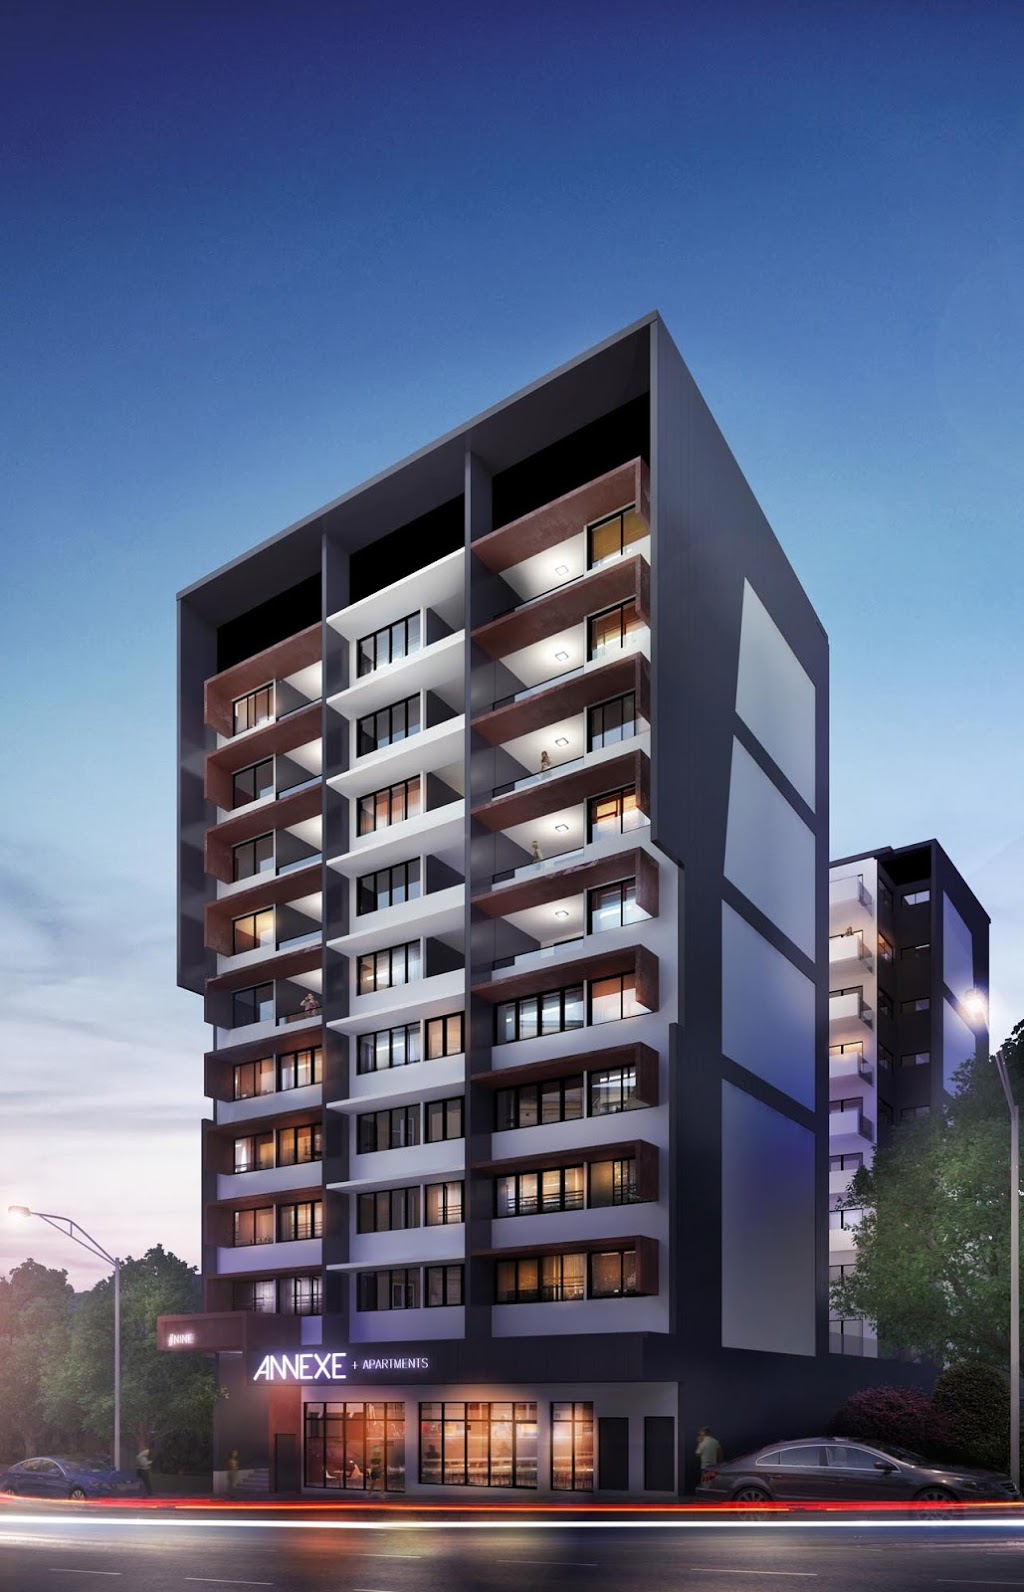  Annexe Apartments Brisbane News Update